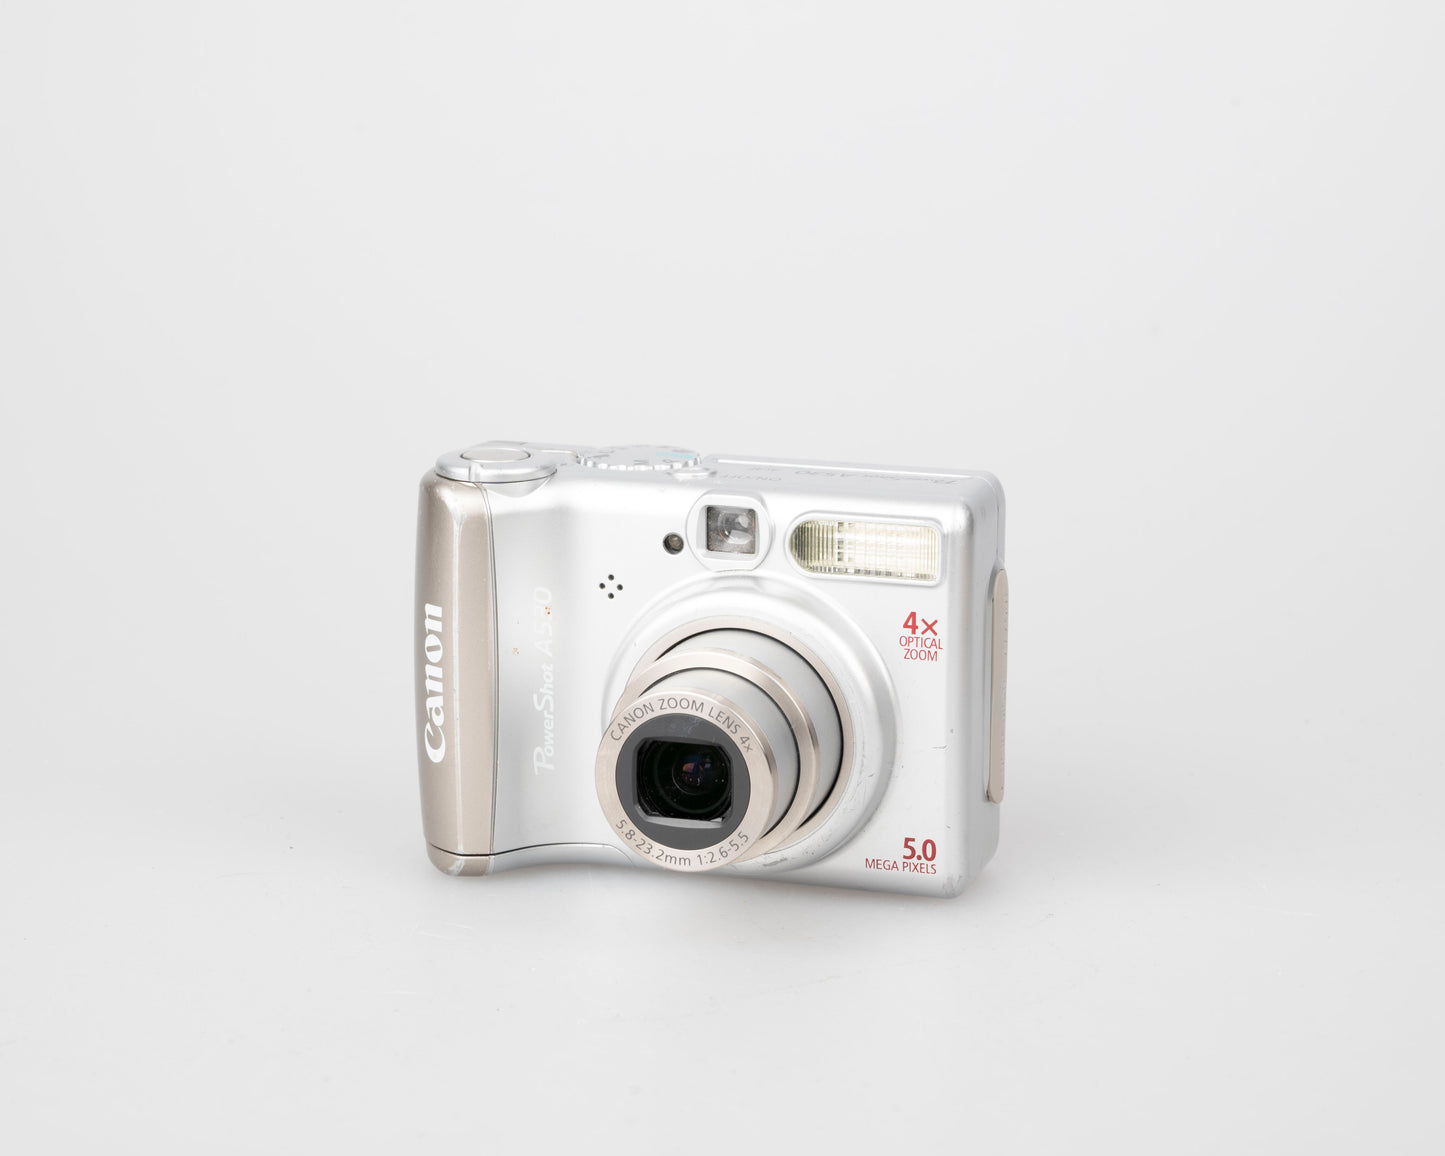 Appareil photo numérique Canon Powershot A530 avec capteur CCD 5 MP (utilise des piles AA et des cartes mémoire SD)